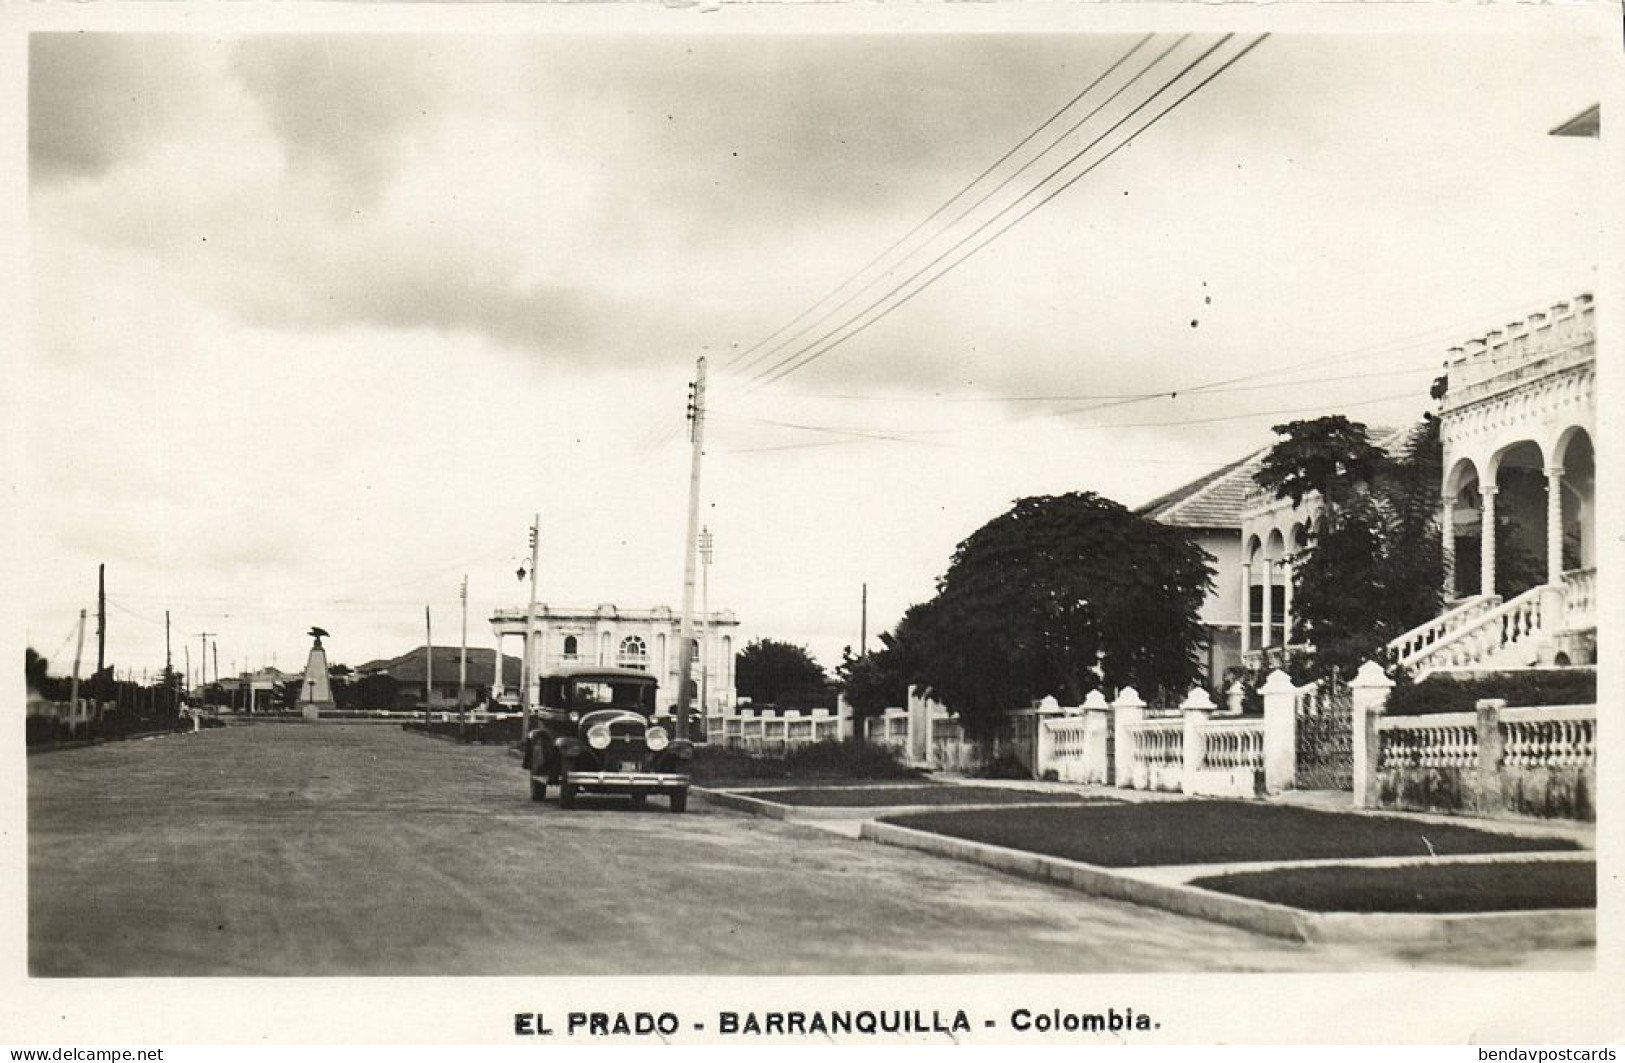 Colombia, BARRANQUILLA, Avenida El Prado, Old Car (1930s) RPPC Postcard - Colombie